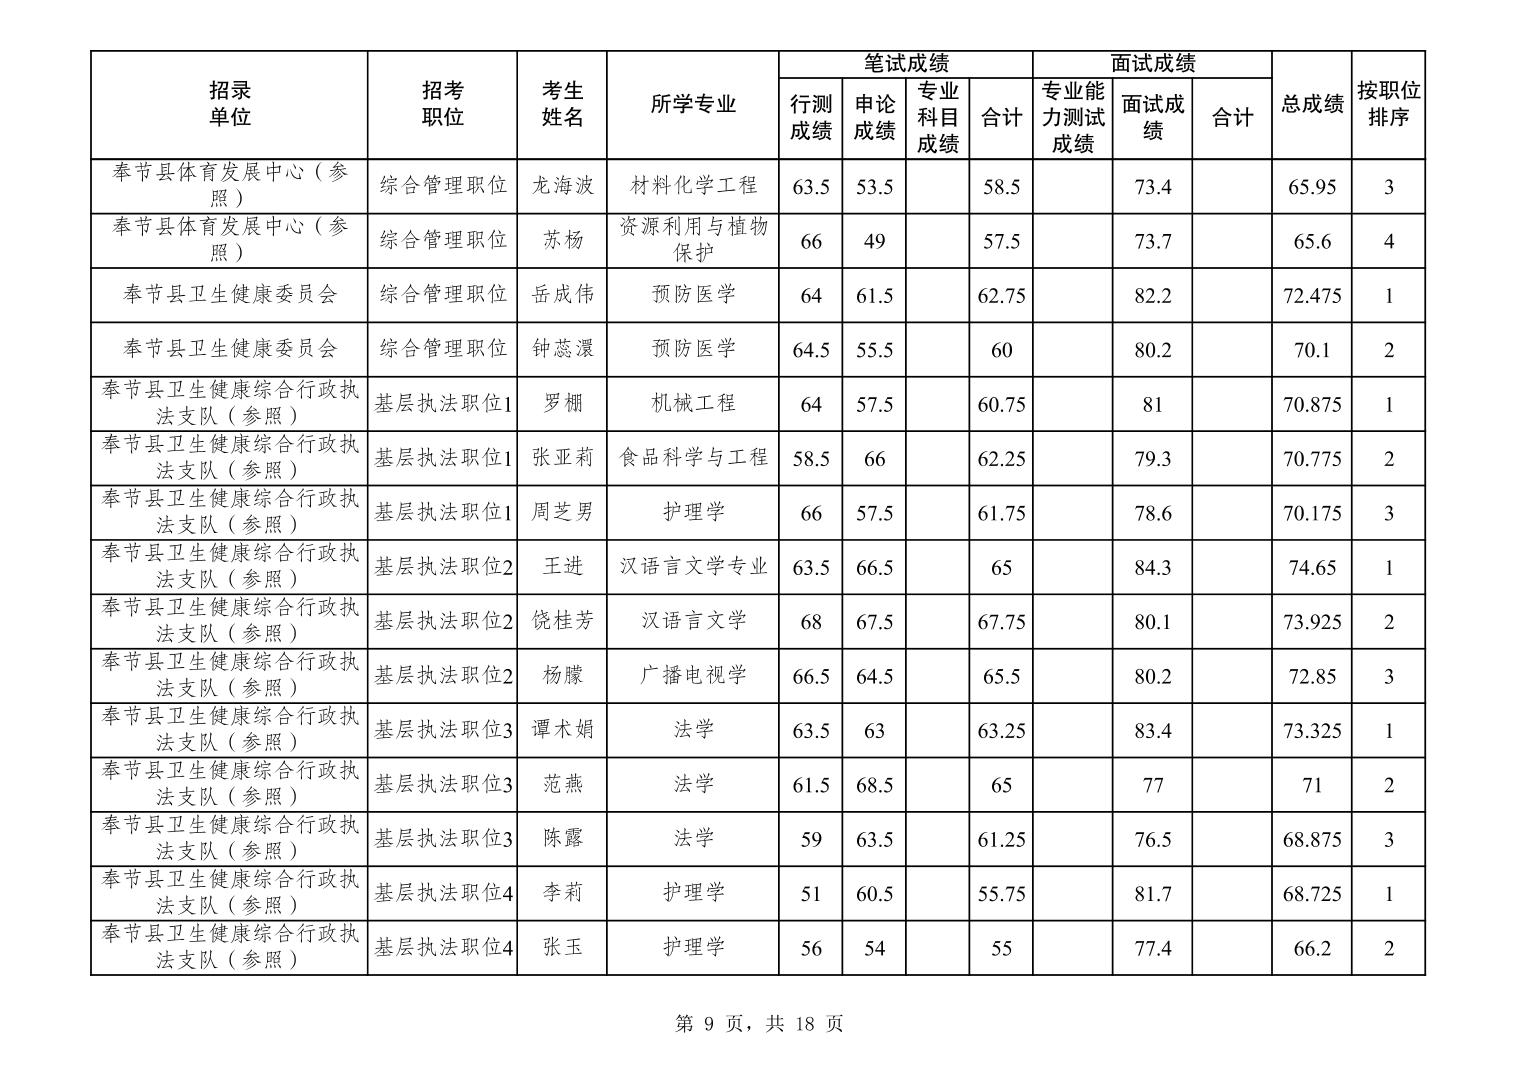 重庆市潼南区2022年度公开考试录用公务员笔试、面试和总成绩公示